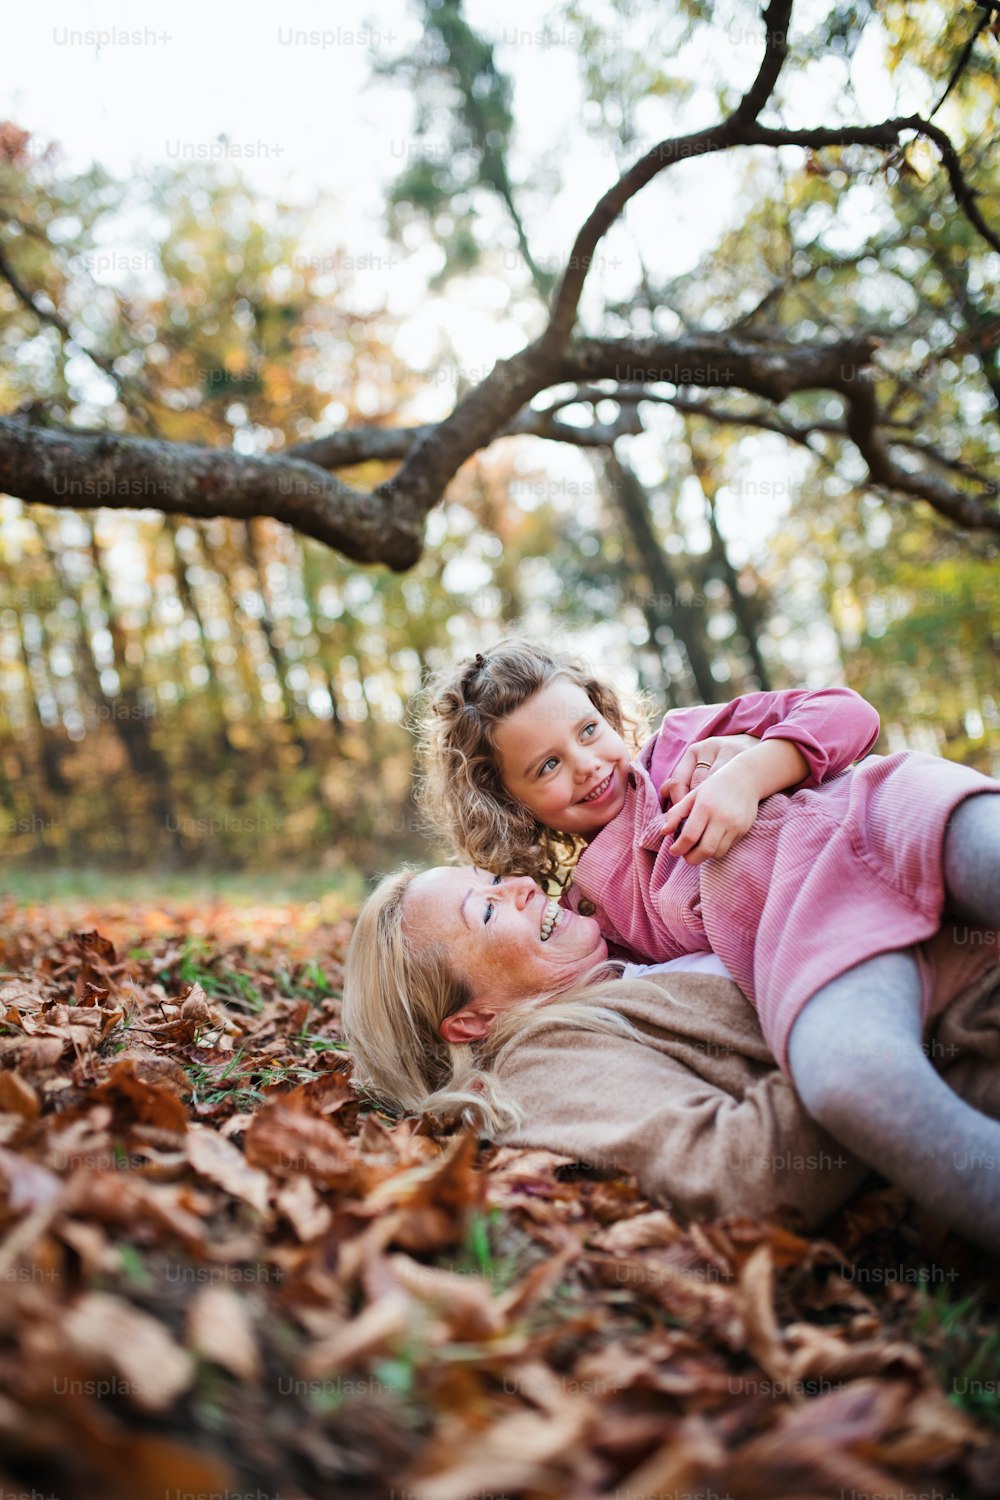 할머니와 함께 가을 숲을 산책하며 즐거운 시간을 보내는 작은 소녀의 초상화.